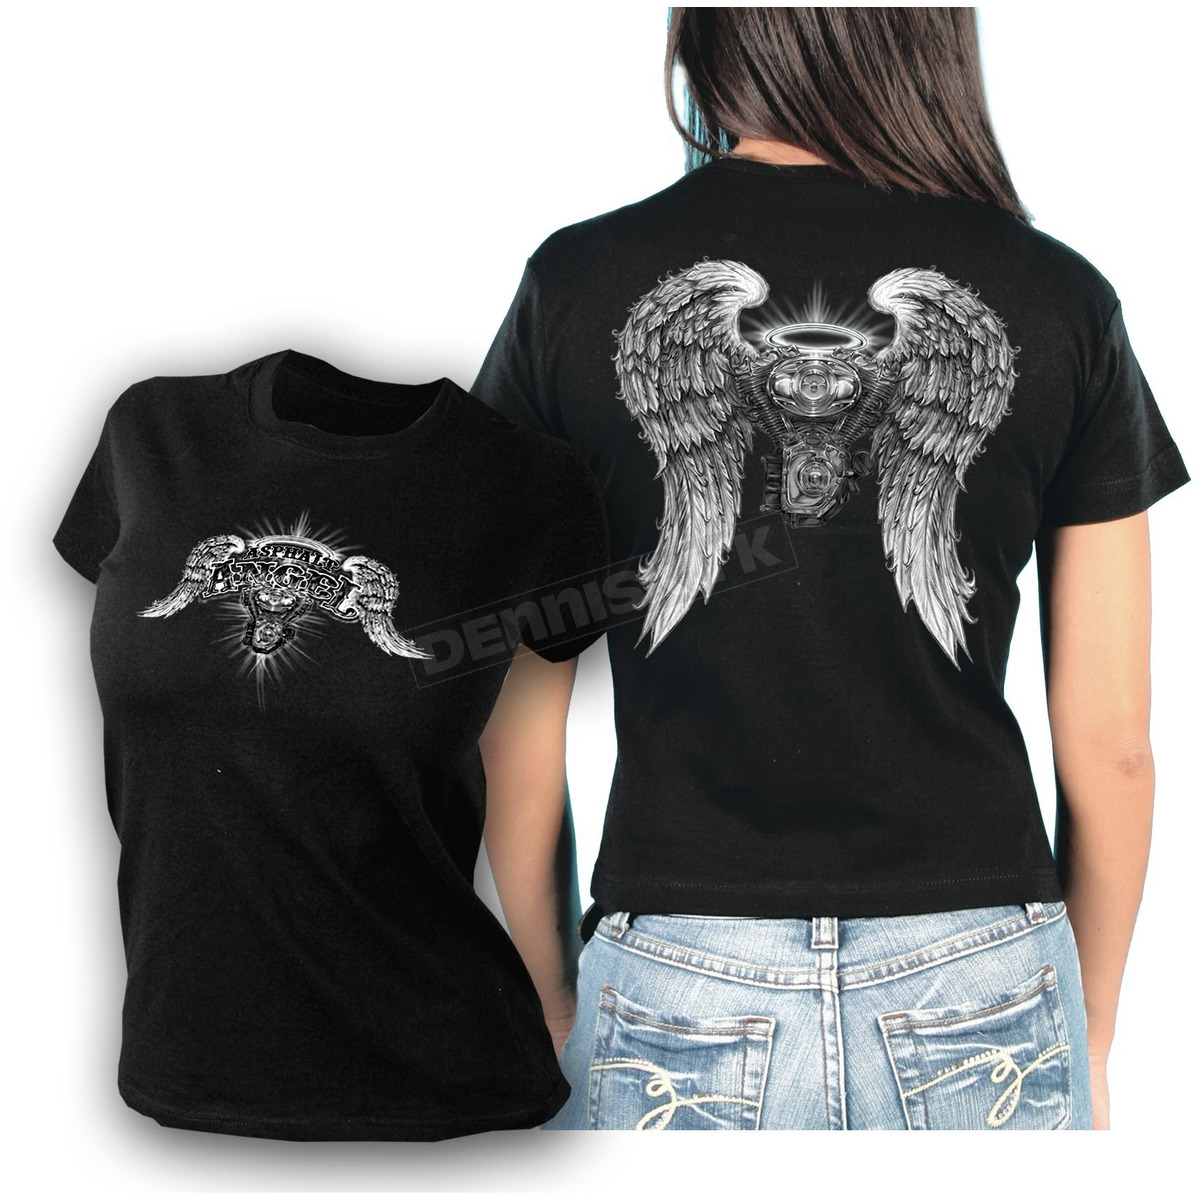 asphalt angel shirt